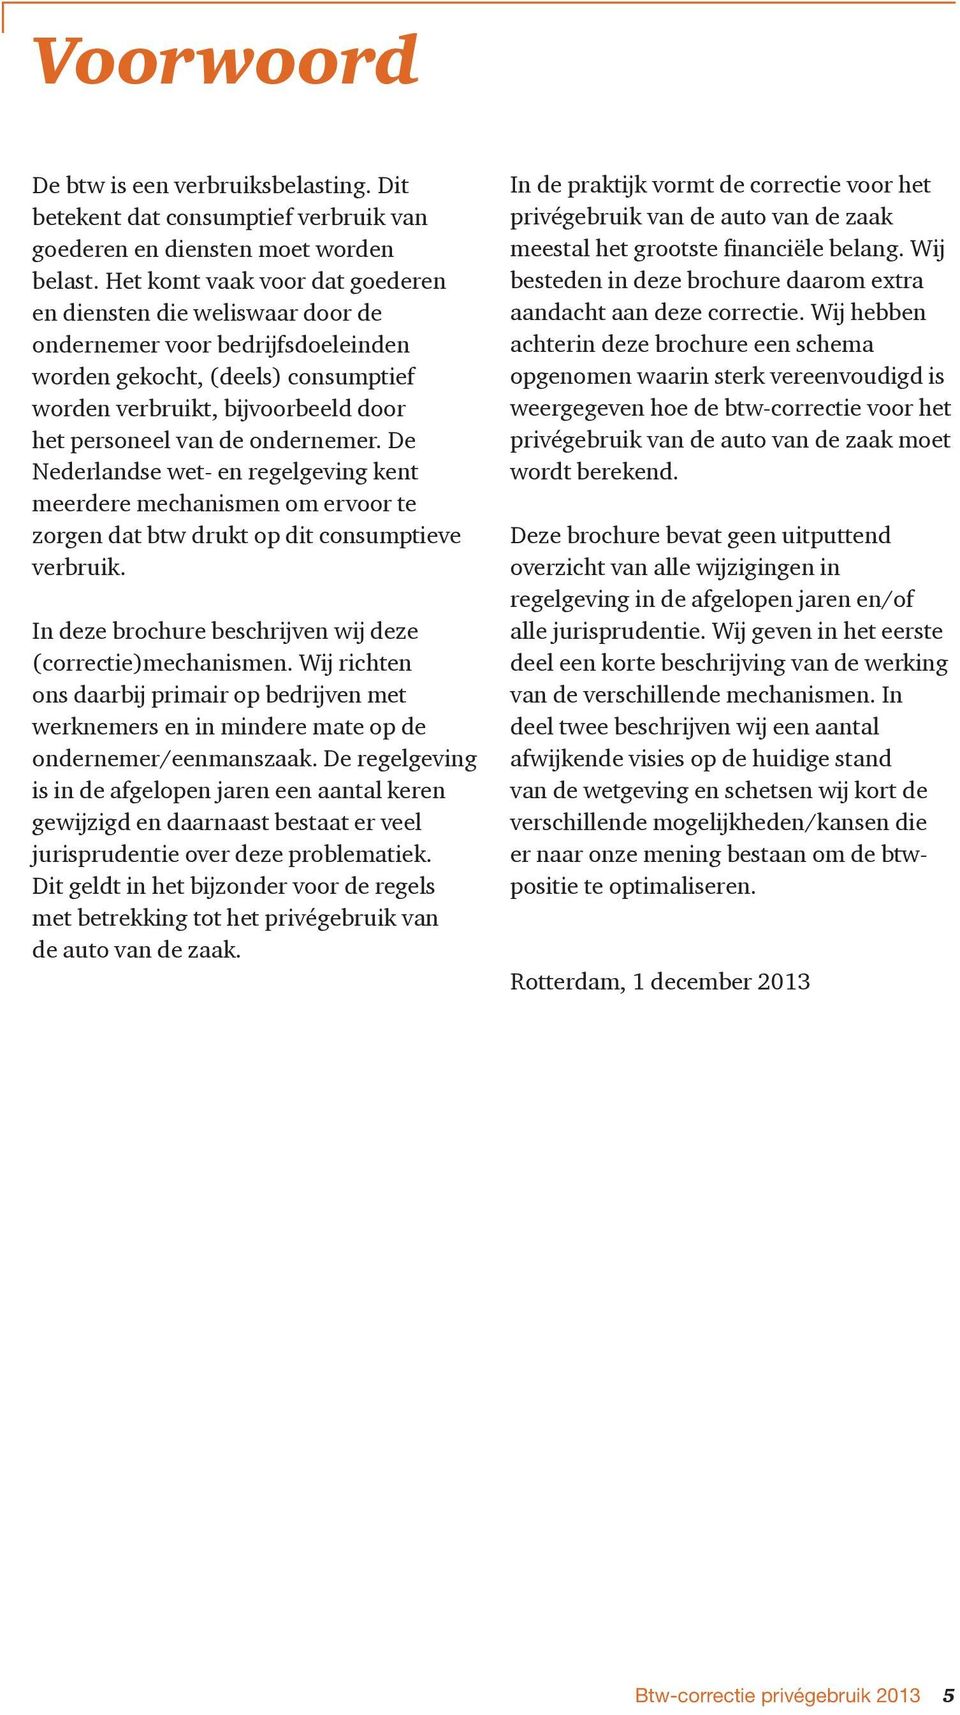 ondernemer. De Nederlandse wet- en regelgeving kent meerdere mechanismen om ervoor te zorgen dat btw drukt op dit consumptieve verbruik. In deze brochure beschrĳven wĳ deze (correctie)mechanismen.